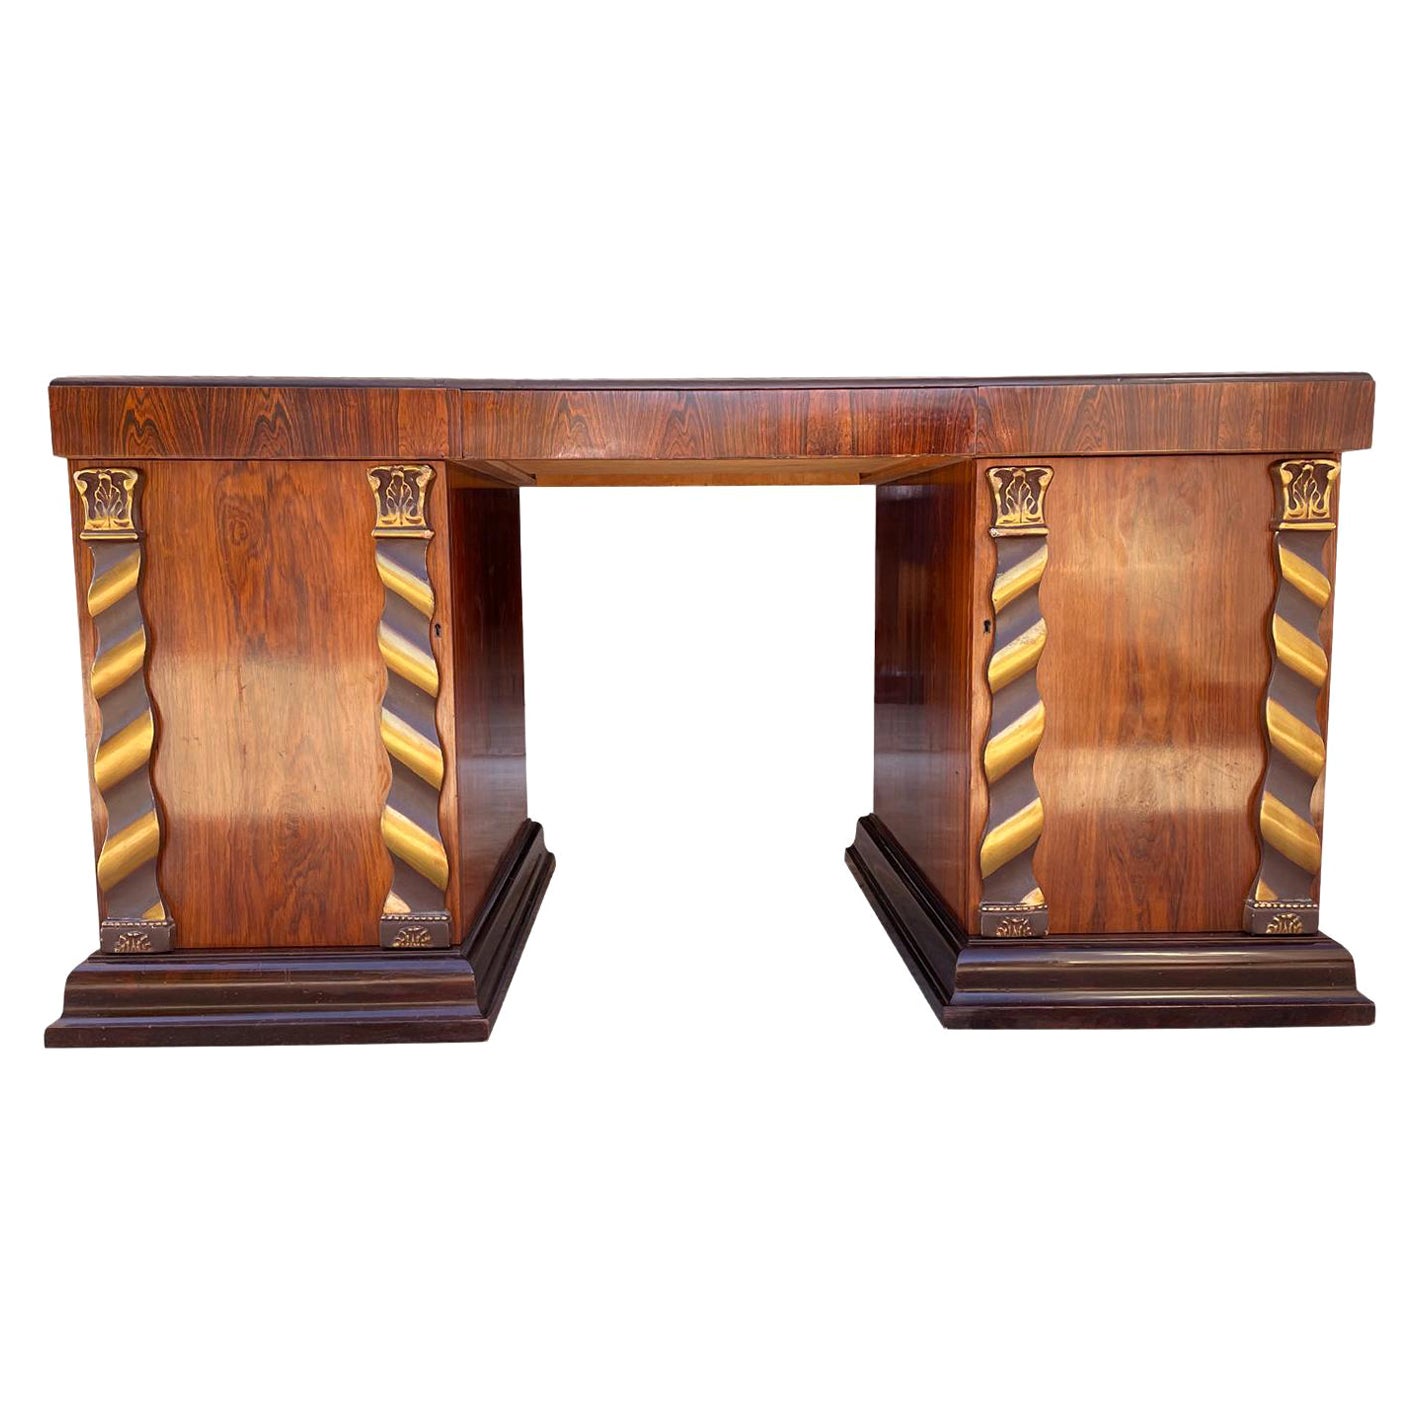 Schwedischer Art-Déco-Schreibtisch aus Jacaranda-Holz des 20. Jahrhunderts – Vintage-Schreibtisch aus Bronze